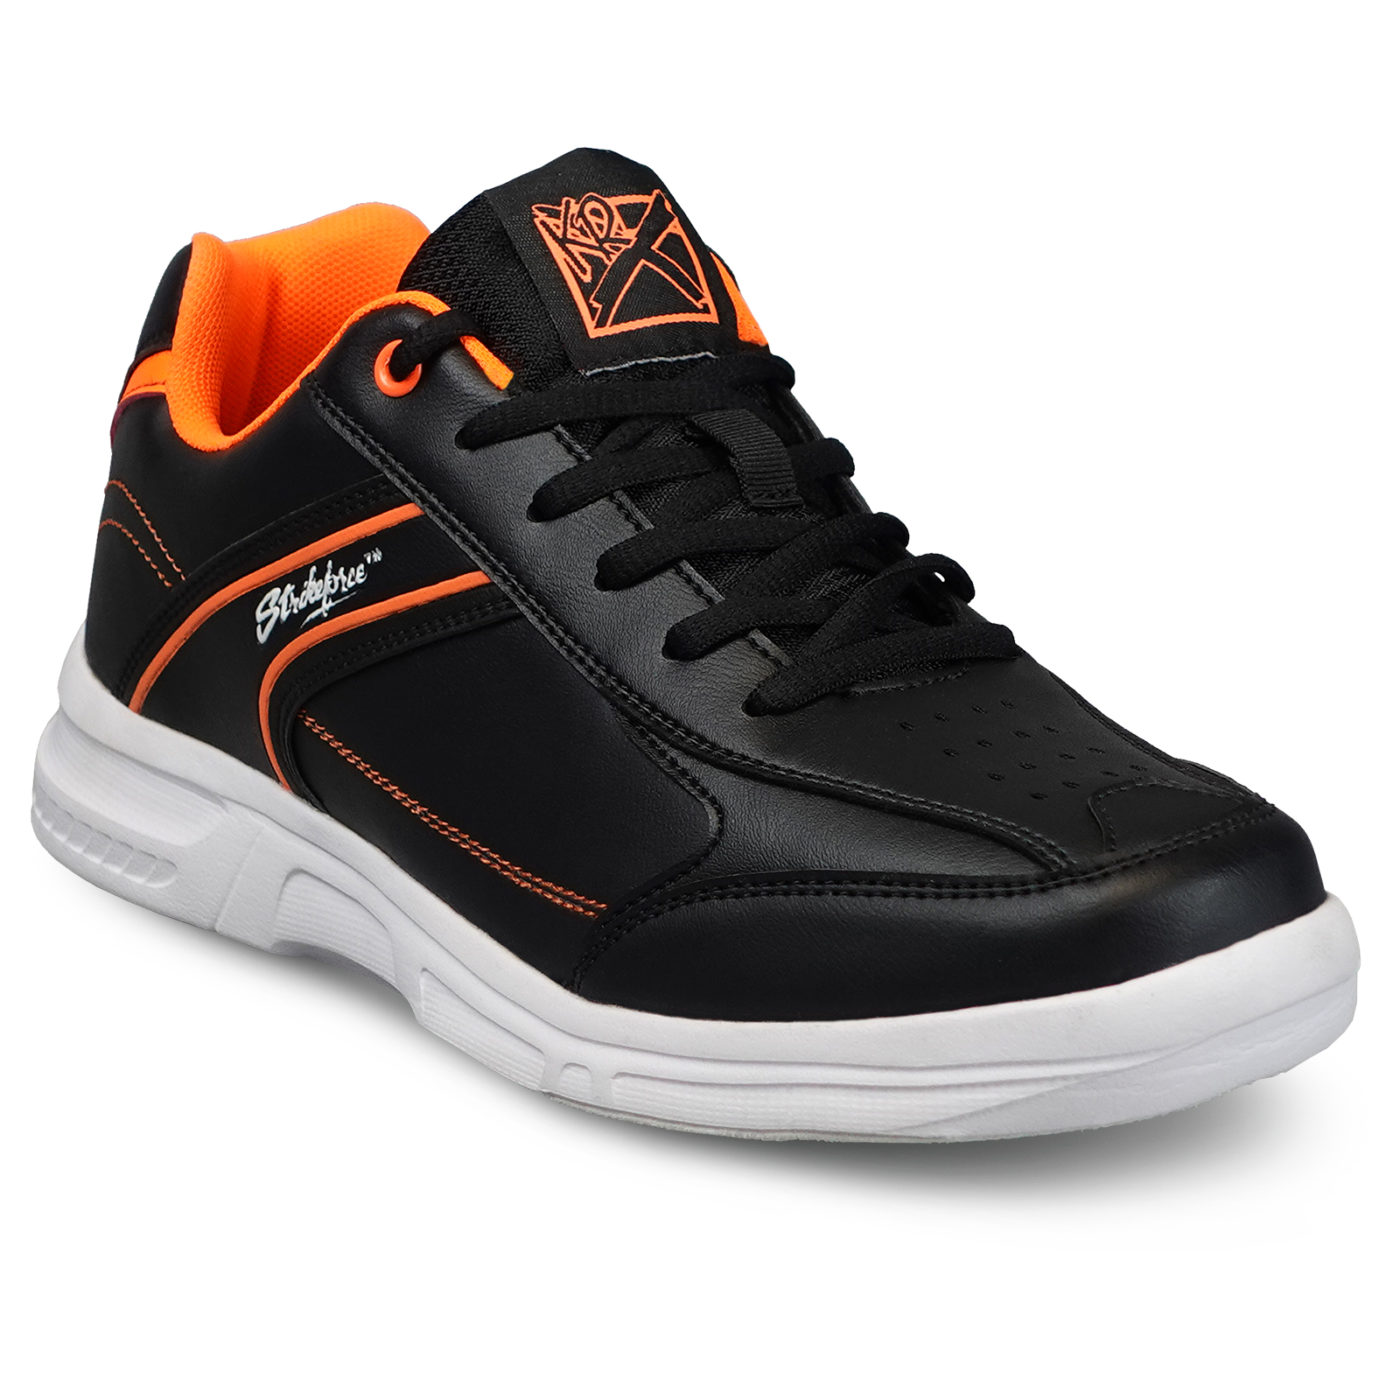 KR Strikeforce Flyer Lite Black Orange Men's Bowling Shoes Questions & Answers